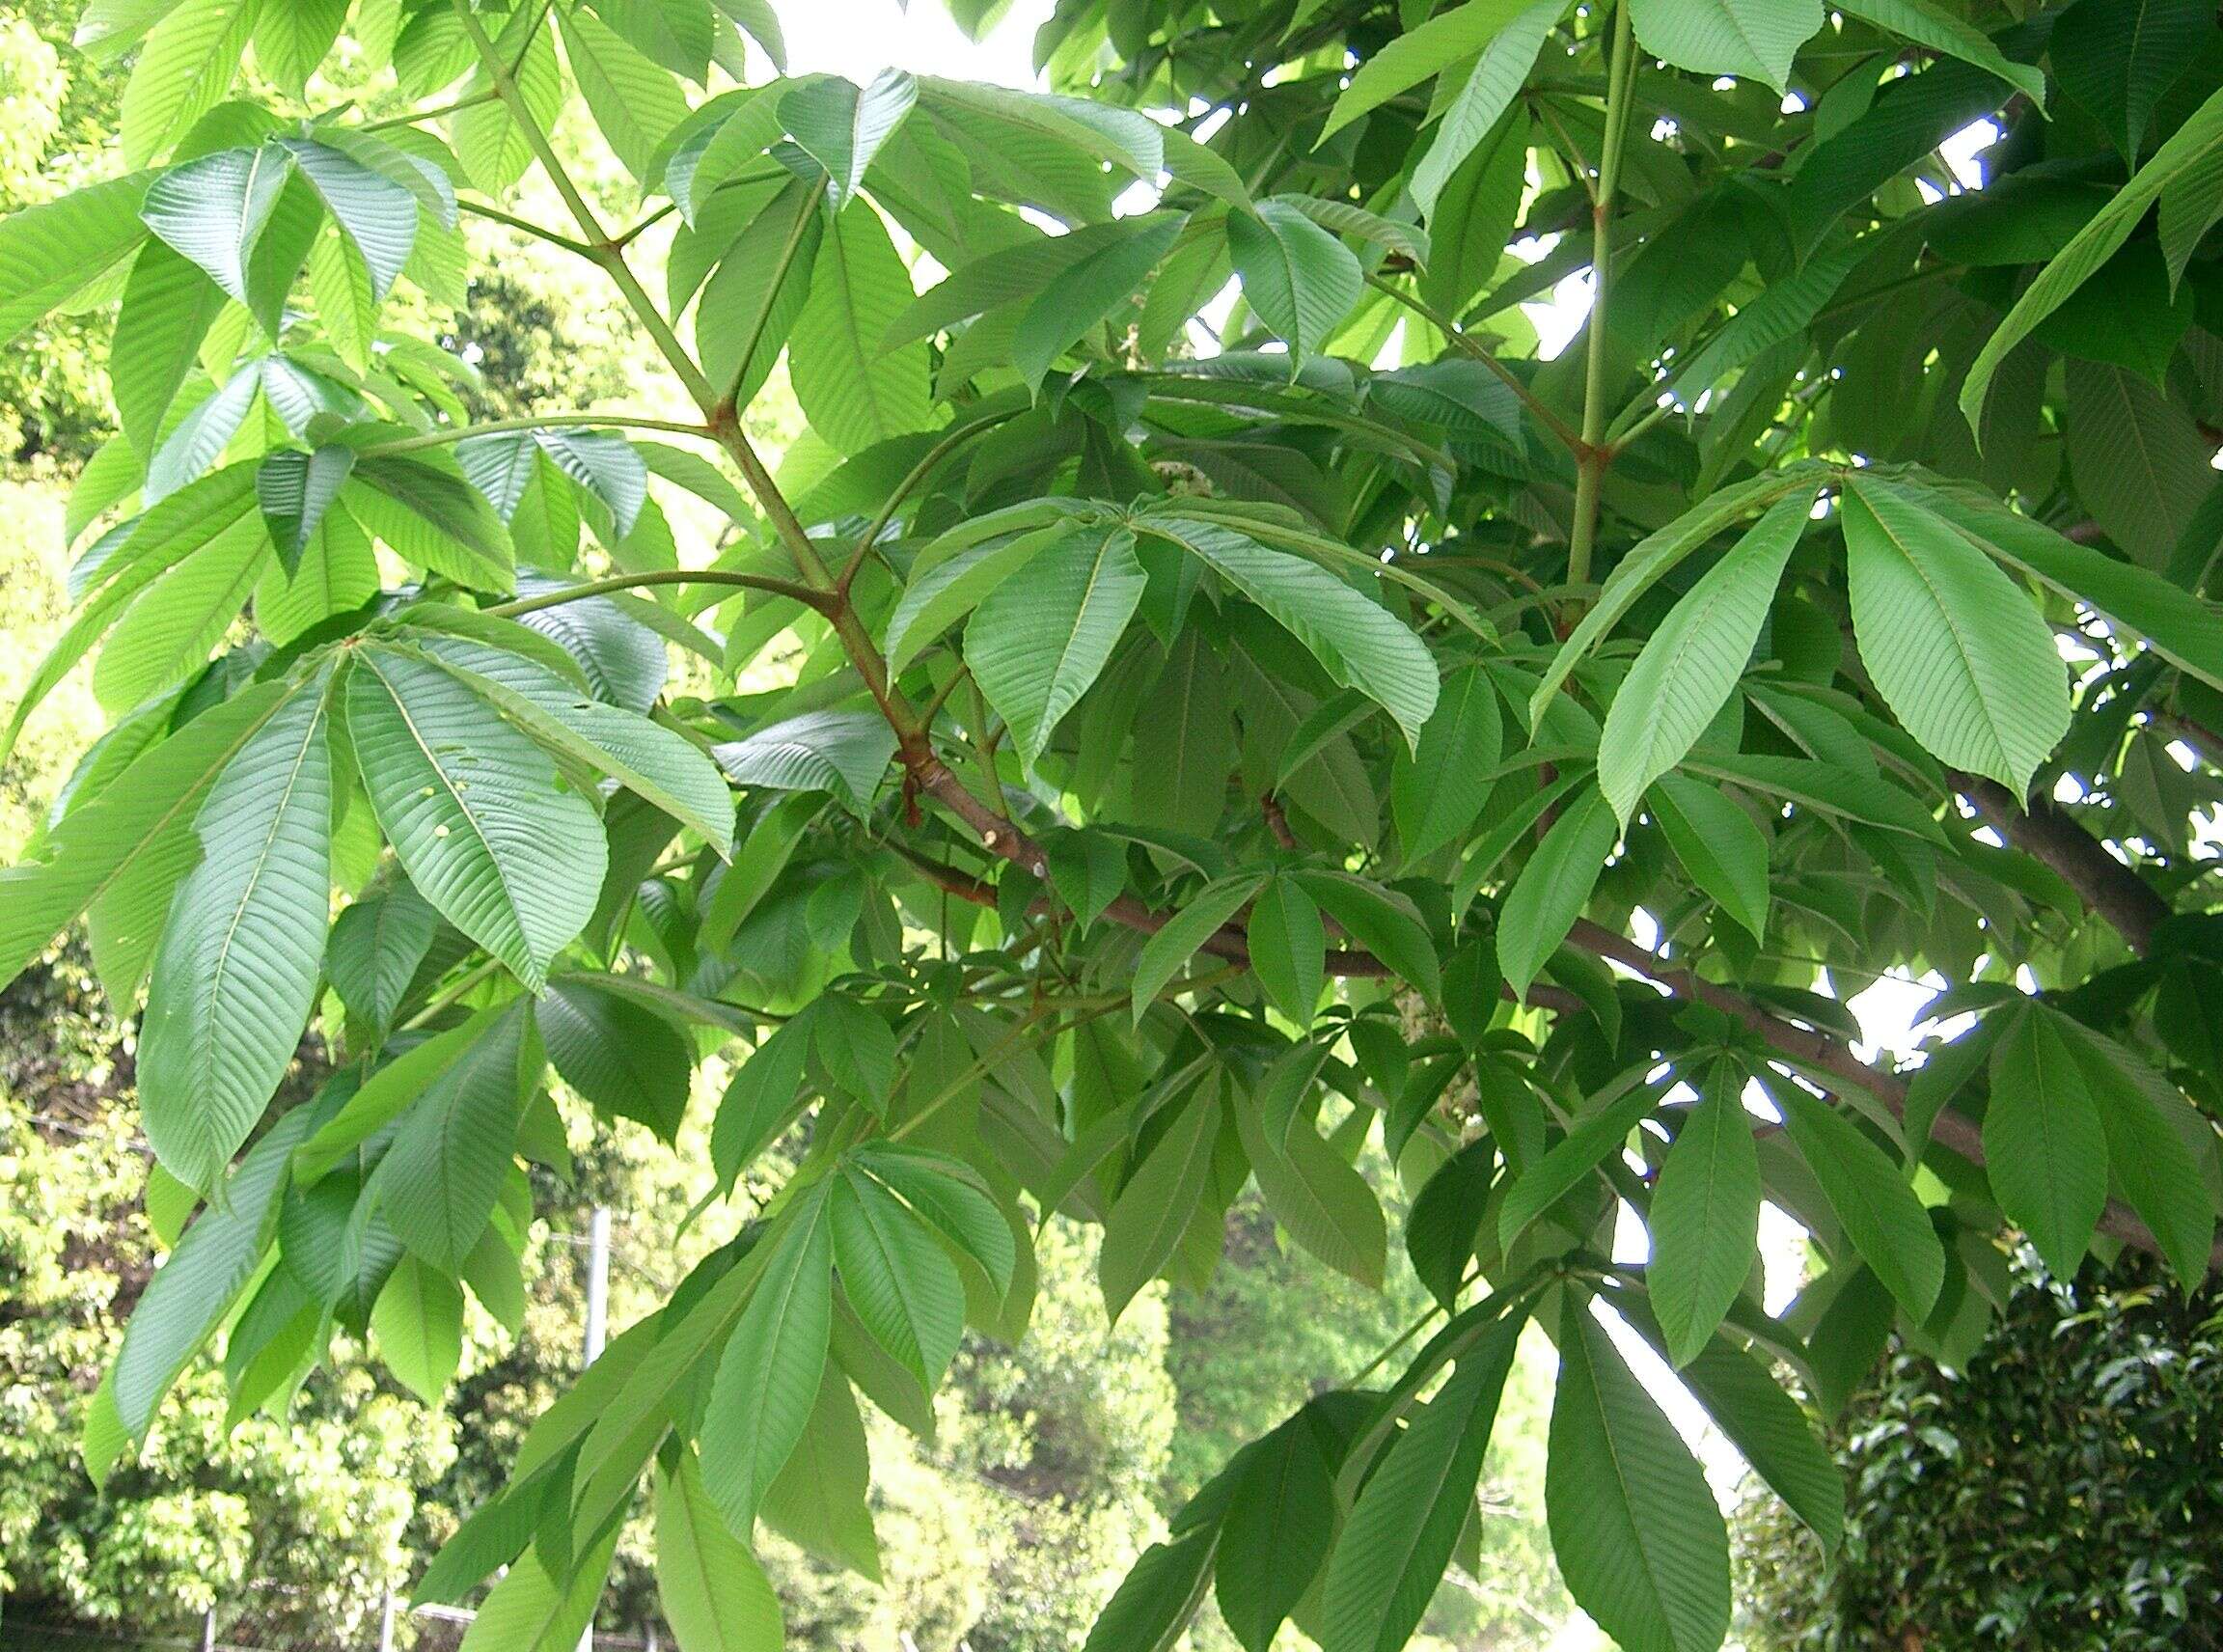 Image of Japanese Horse-chestnut